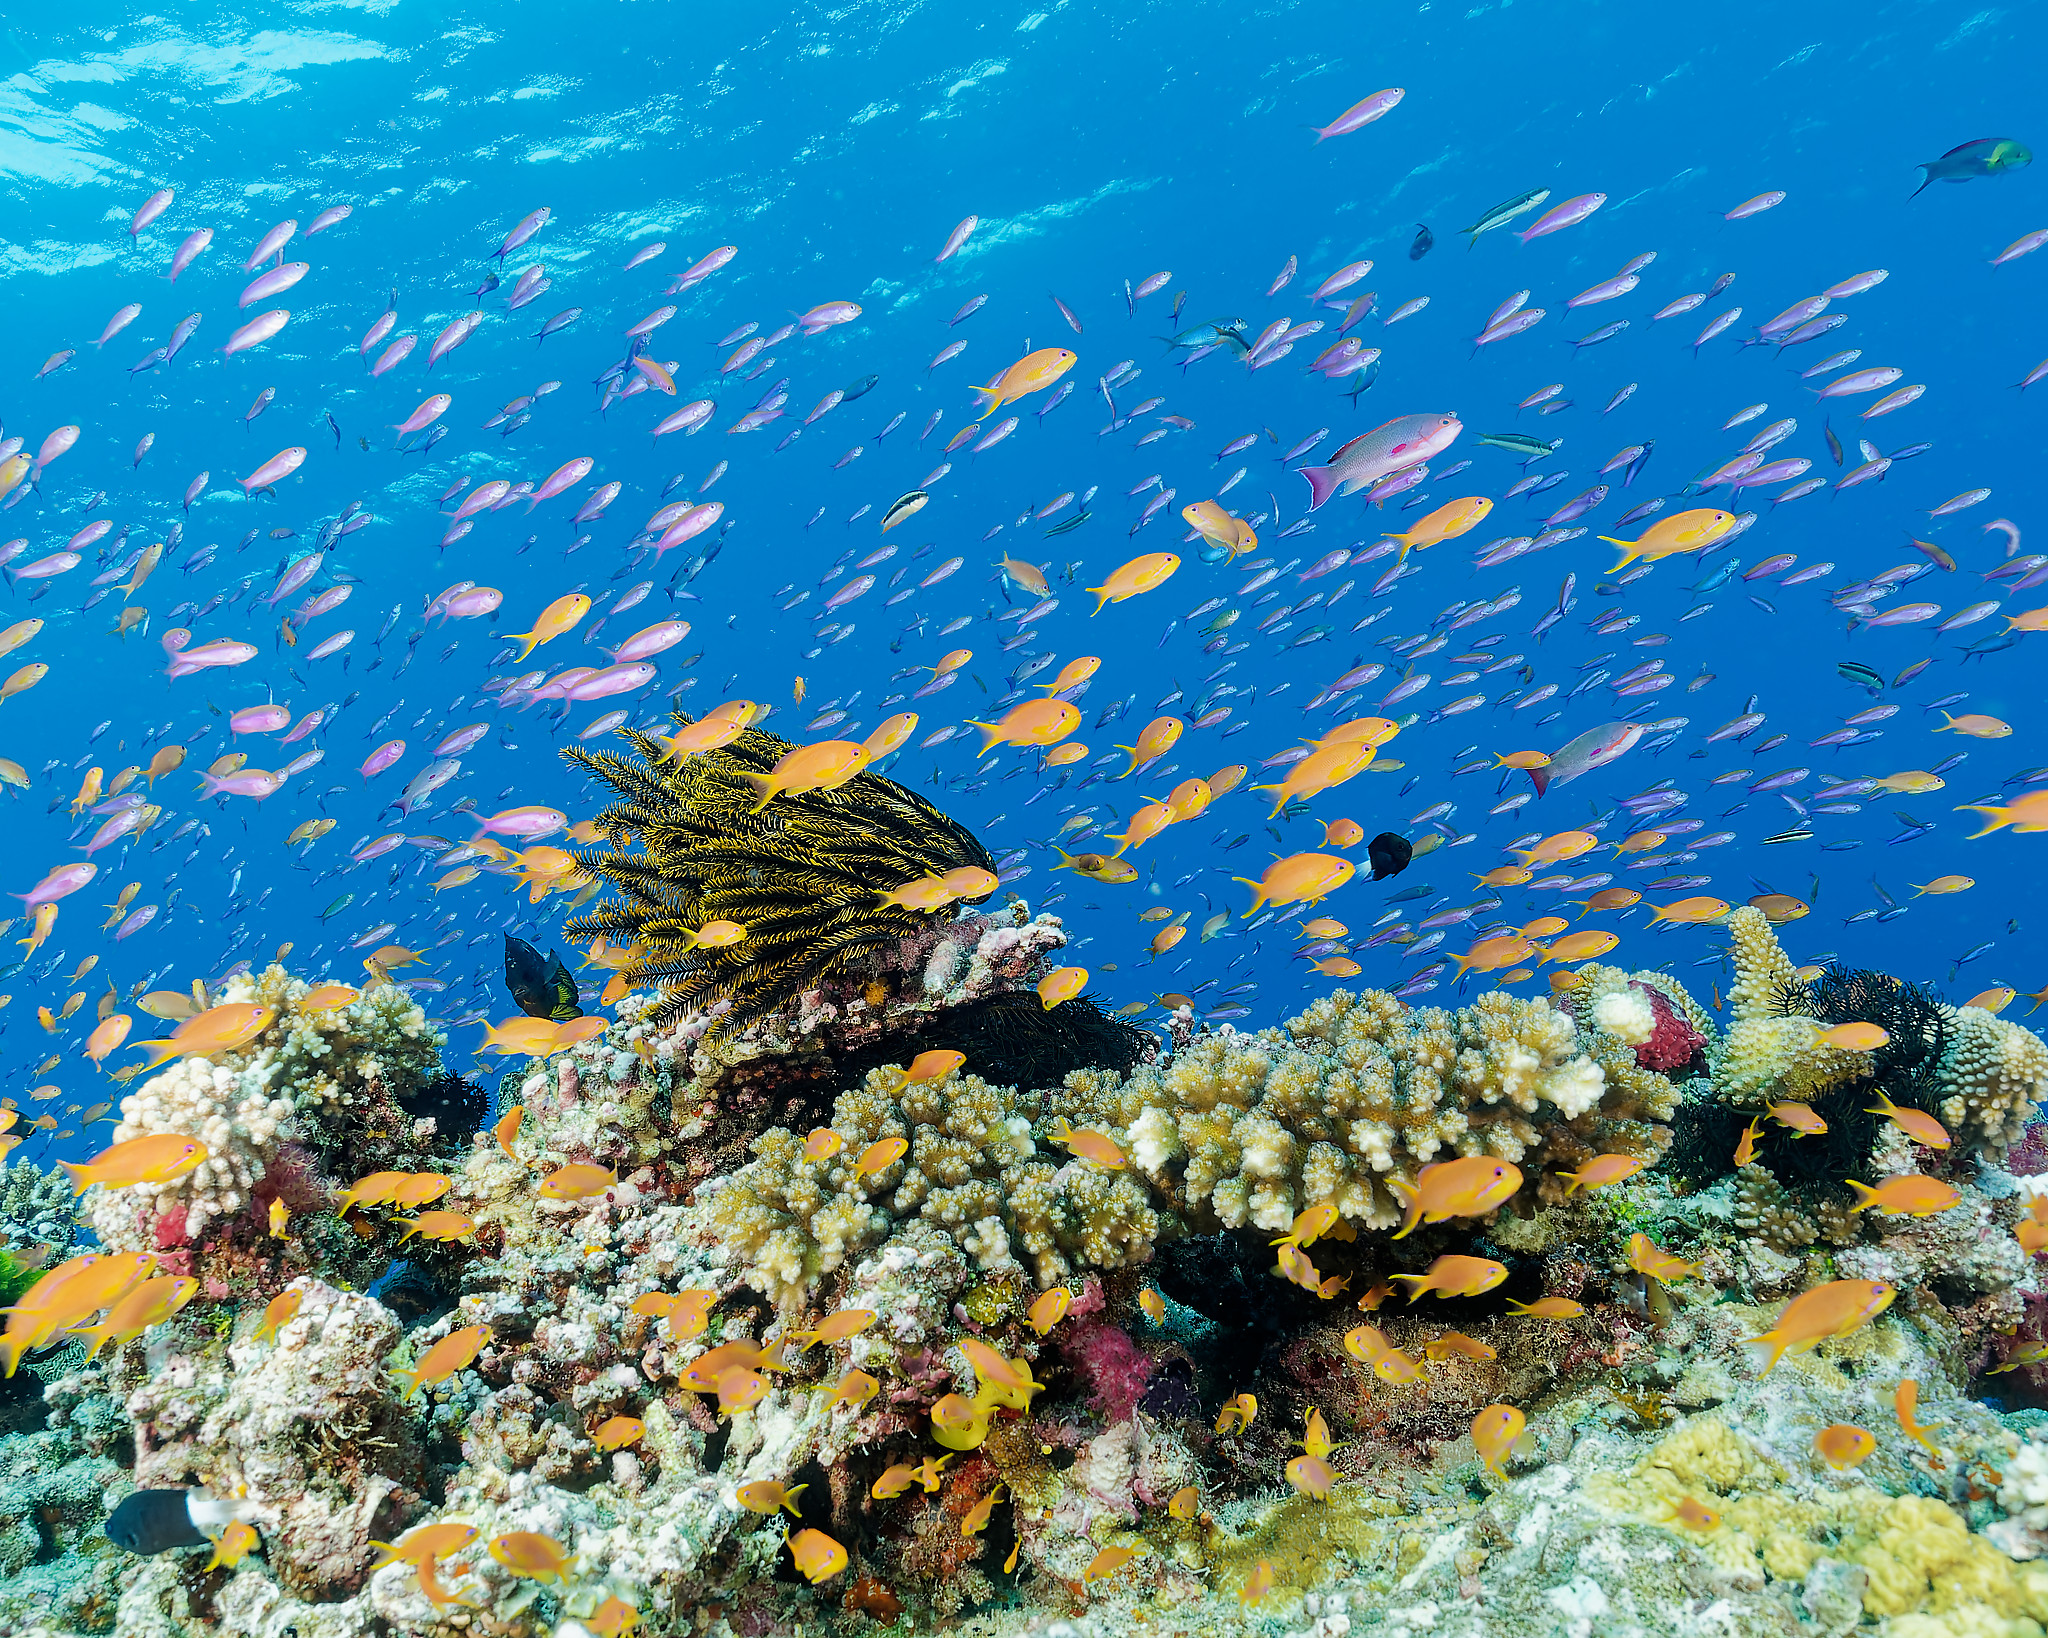 Fiji reef scene